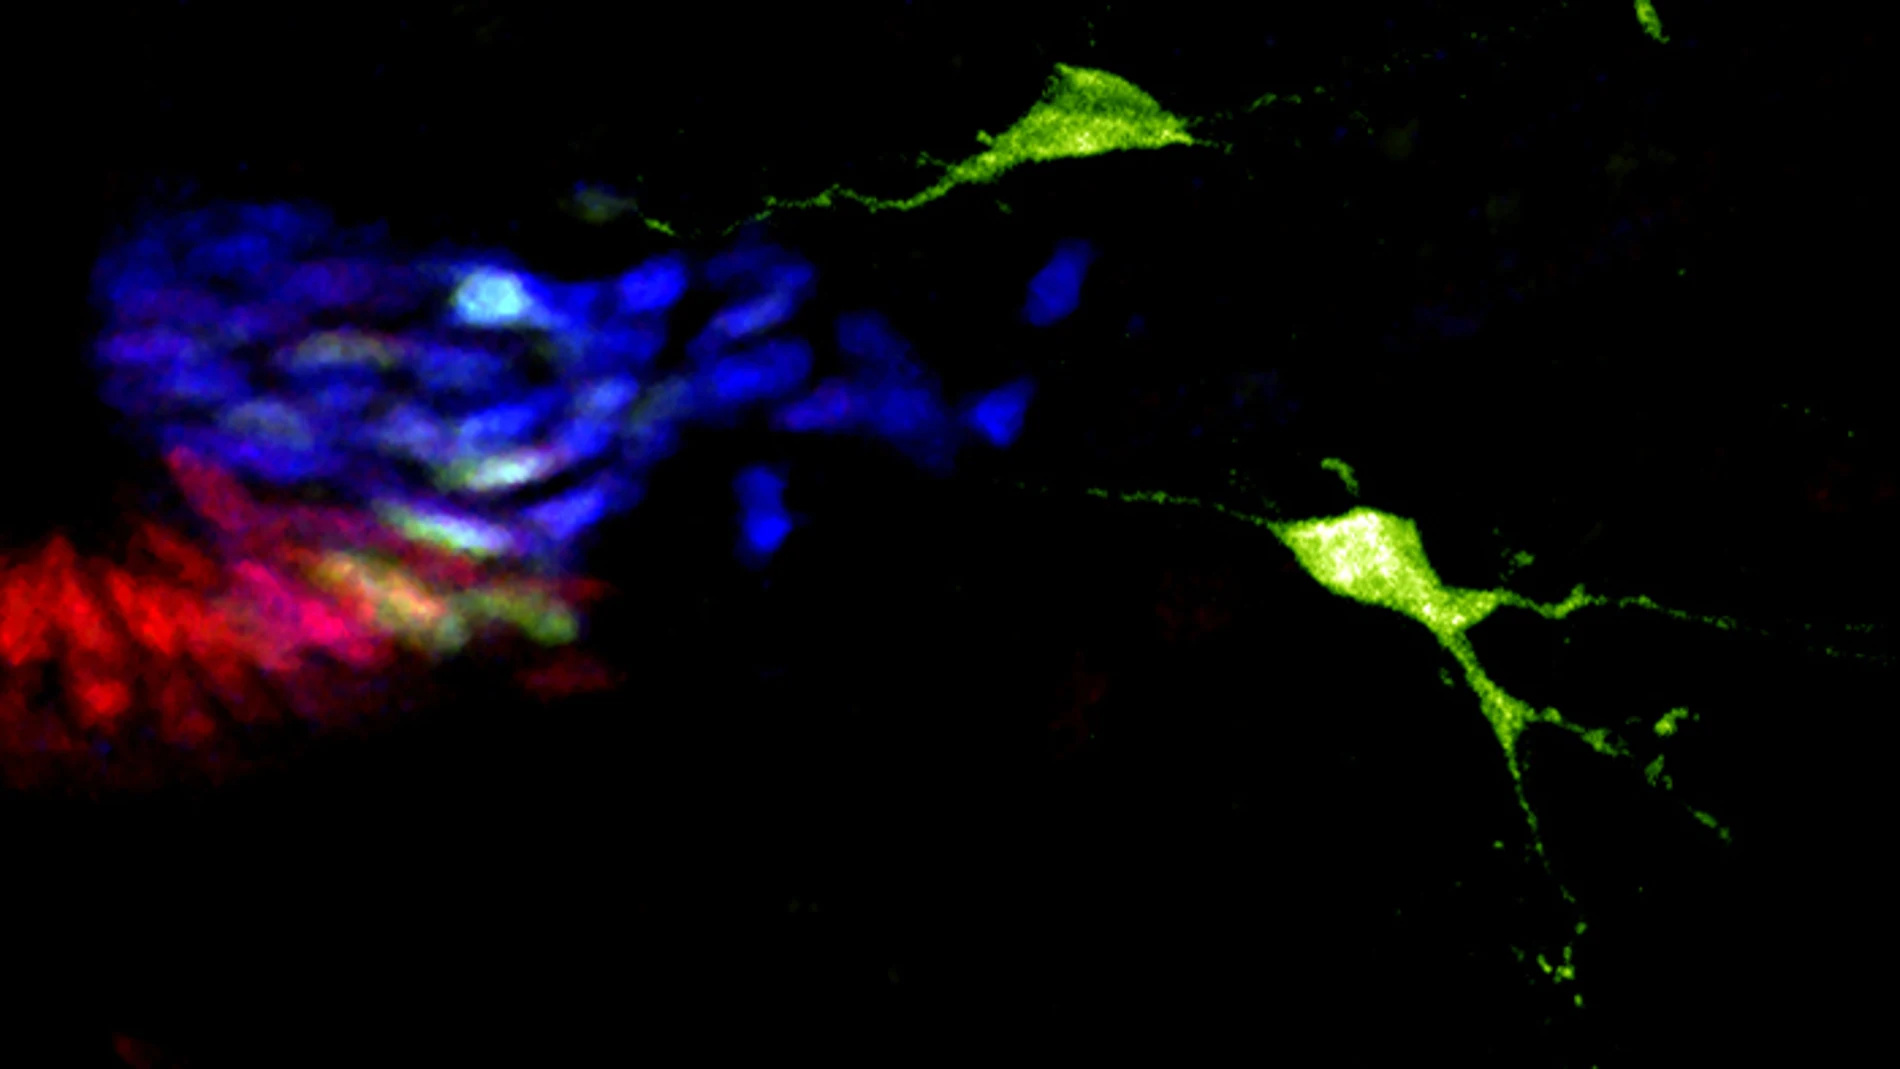 Neuronas del cerebro que producen serotonina (en verde) originadas de progenitores de la médula espinal (marcados en azul y rojo a la izquierda de la imagen) luego de la desactivación del gen Neurogenina3